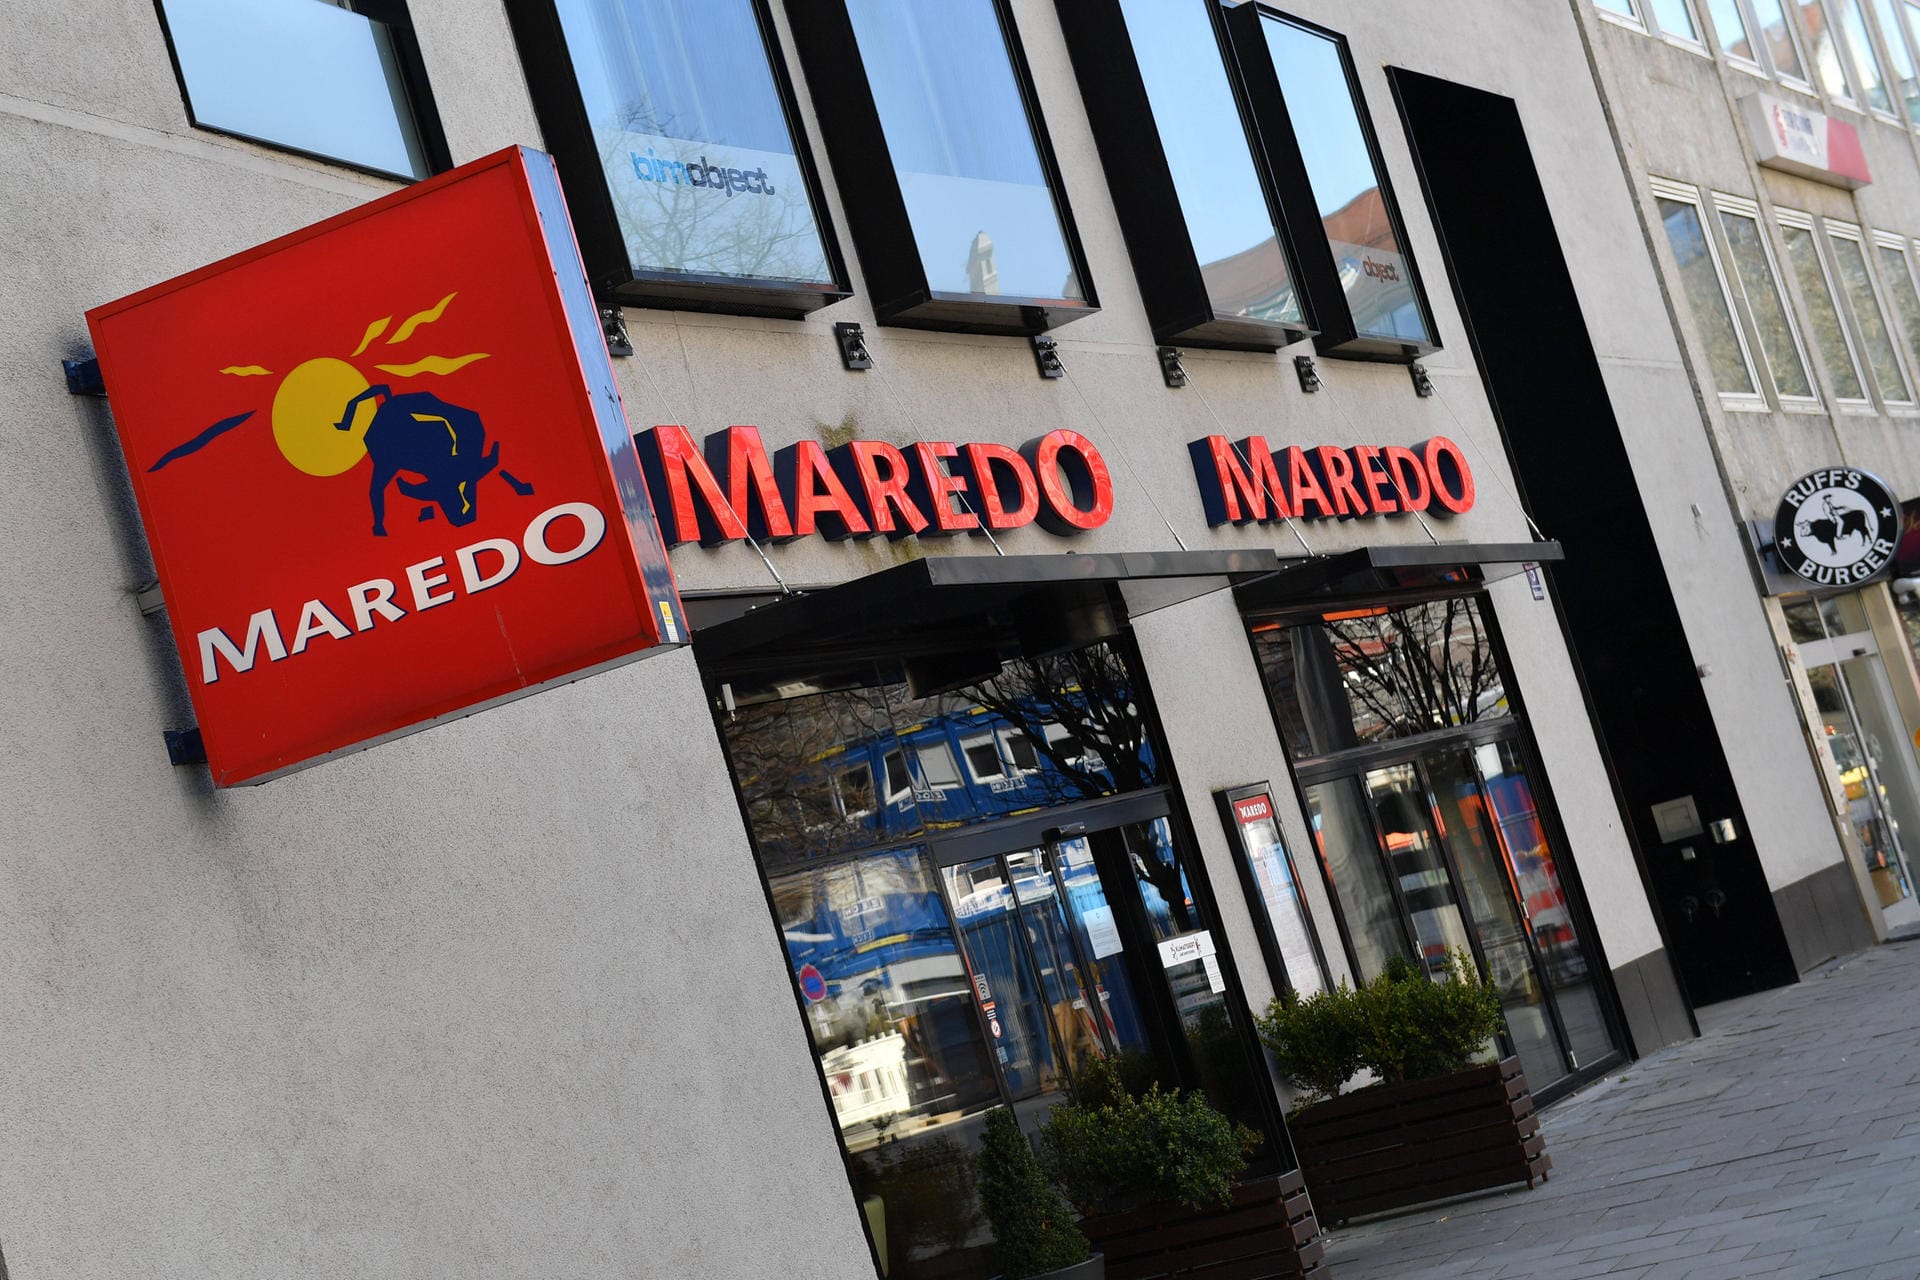 Maredo: Die 1973 gegründete Steakhauskette, die schon vor der Corona-Pandemie unter Druck stand, hatte im März 2020 einen Insolvenzantrag gestellt. Zunächst wurde ein Teil der 35 Restaurants geschlossen und die dort beschäftigten Mitarbeiter wurden entlassen. Im Januar 2021 kam dann das Aus für die verbliebenen 22 Lokale. Im Juli 2021 wurde bekannt: Ein Investor hat die Maredo-Markenrechte gekauft – und will wieder Restaurants unter dem Namen eröffnen.